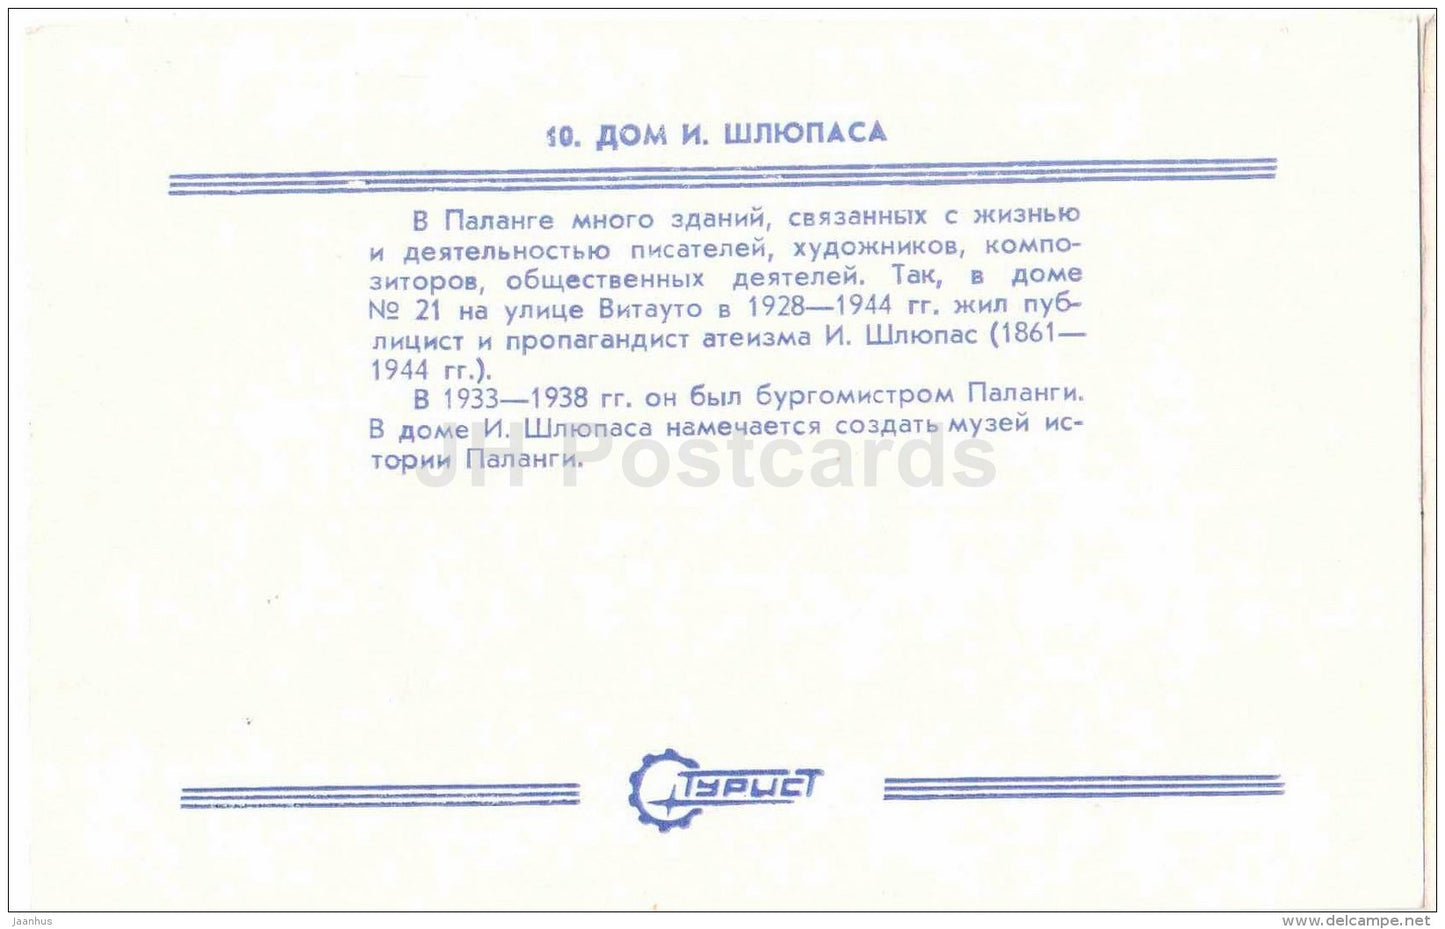 Sliuaupas House - Palanga - Turist - 1987 - Lithuania USSR - unused - JH Postcards